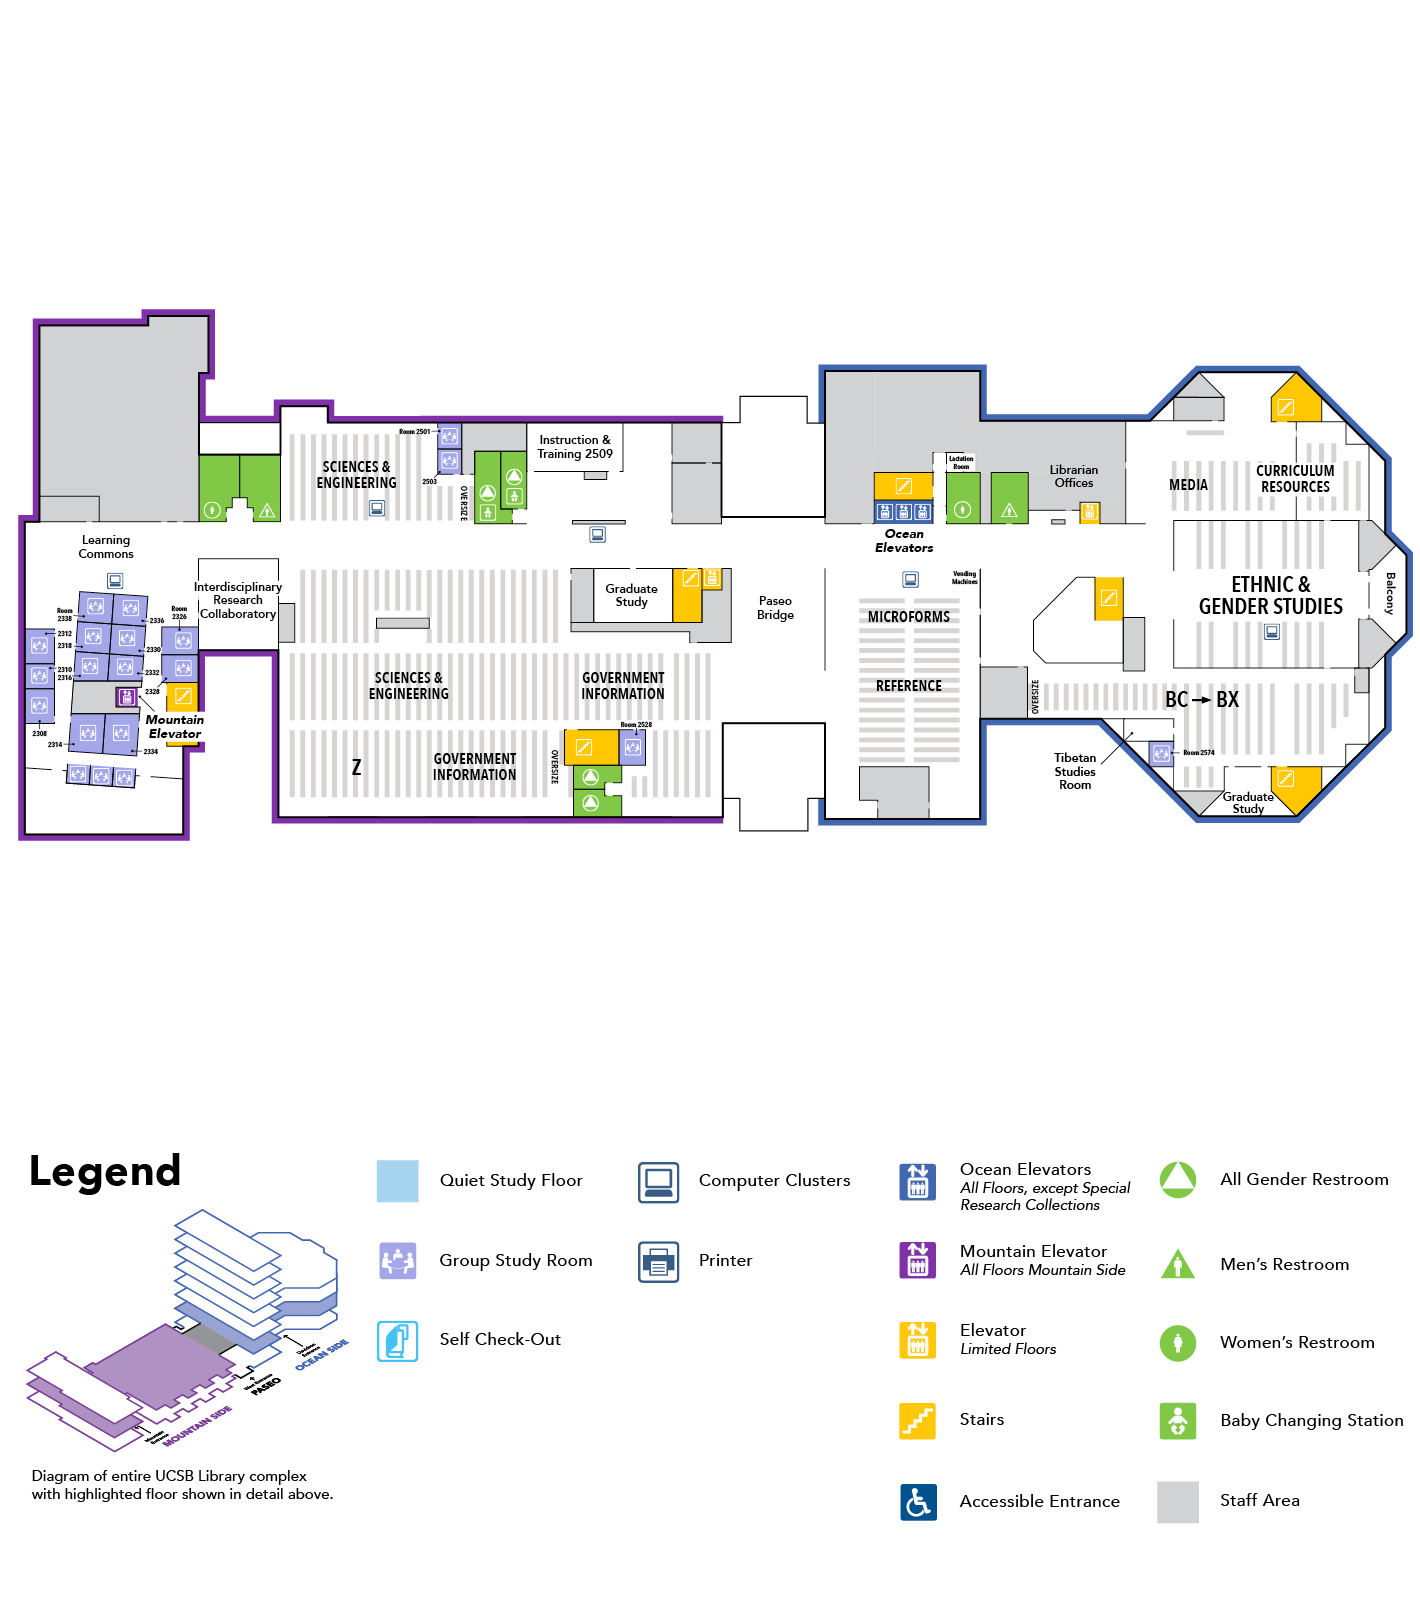 map of floor 2